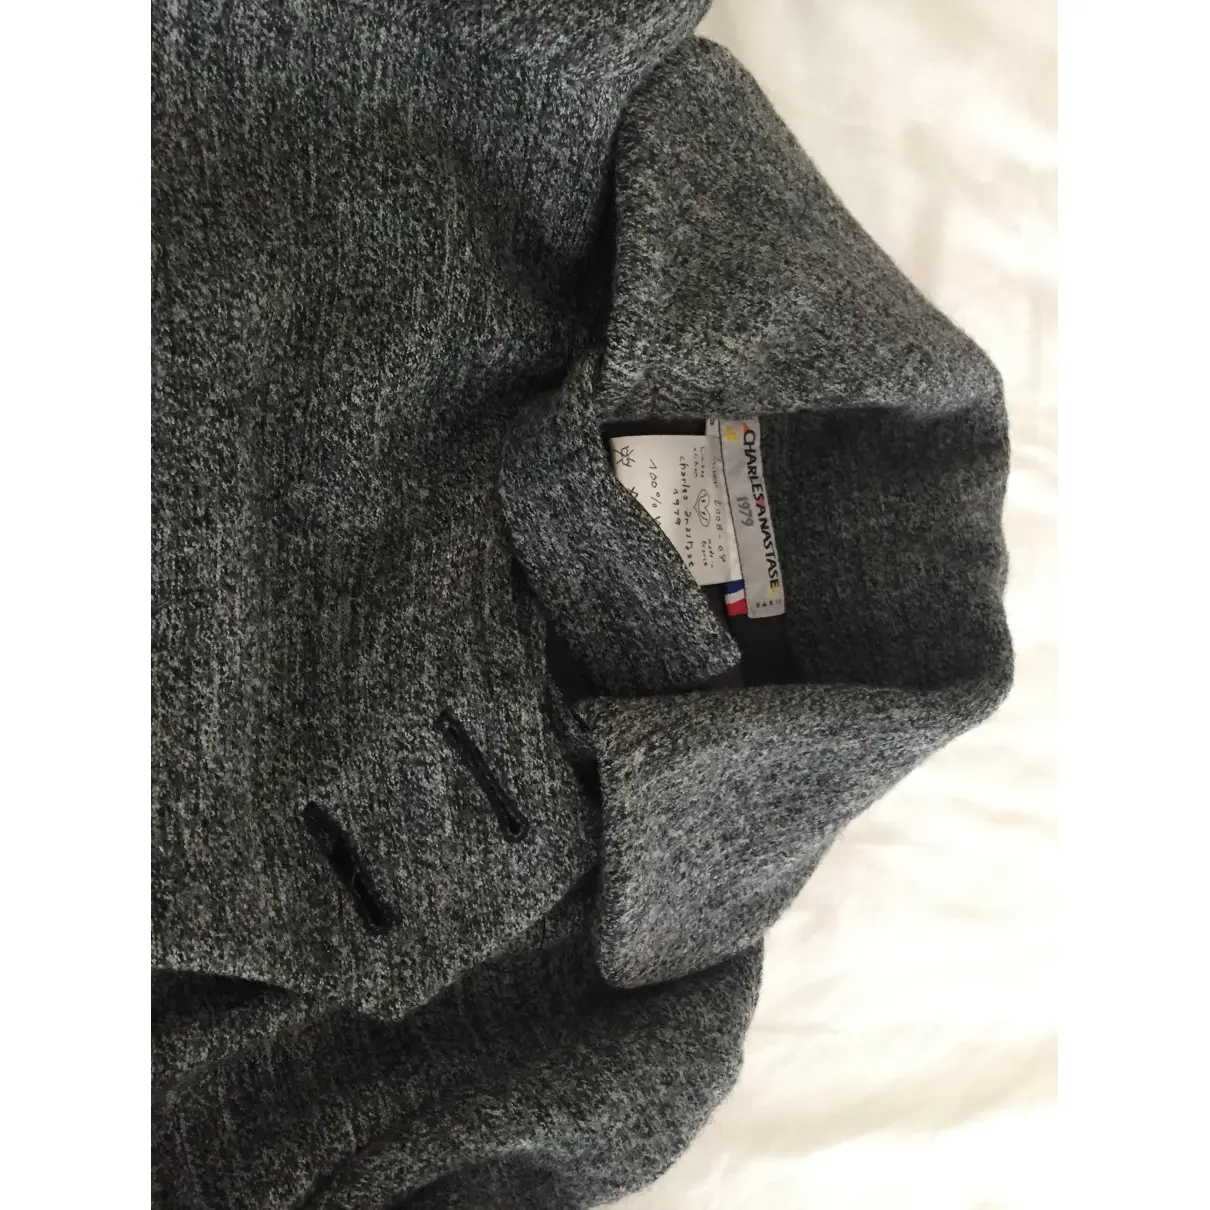 Buy Charles Anastase Wool coat online